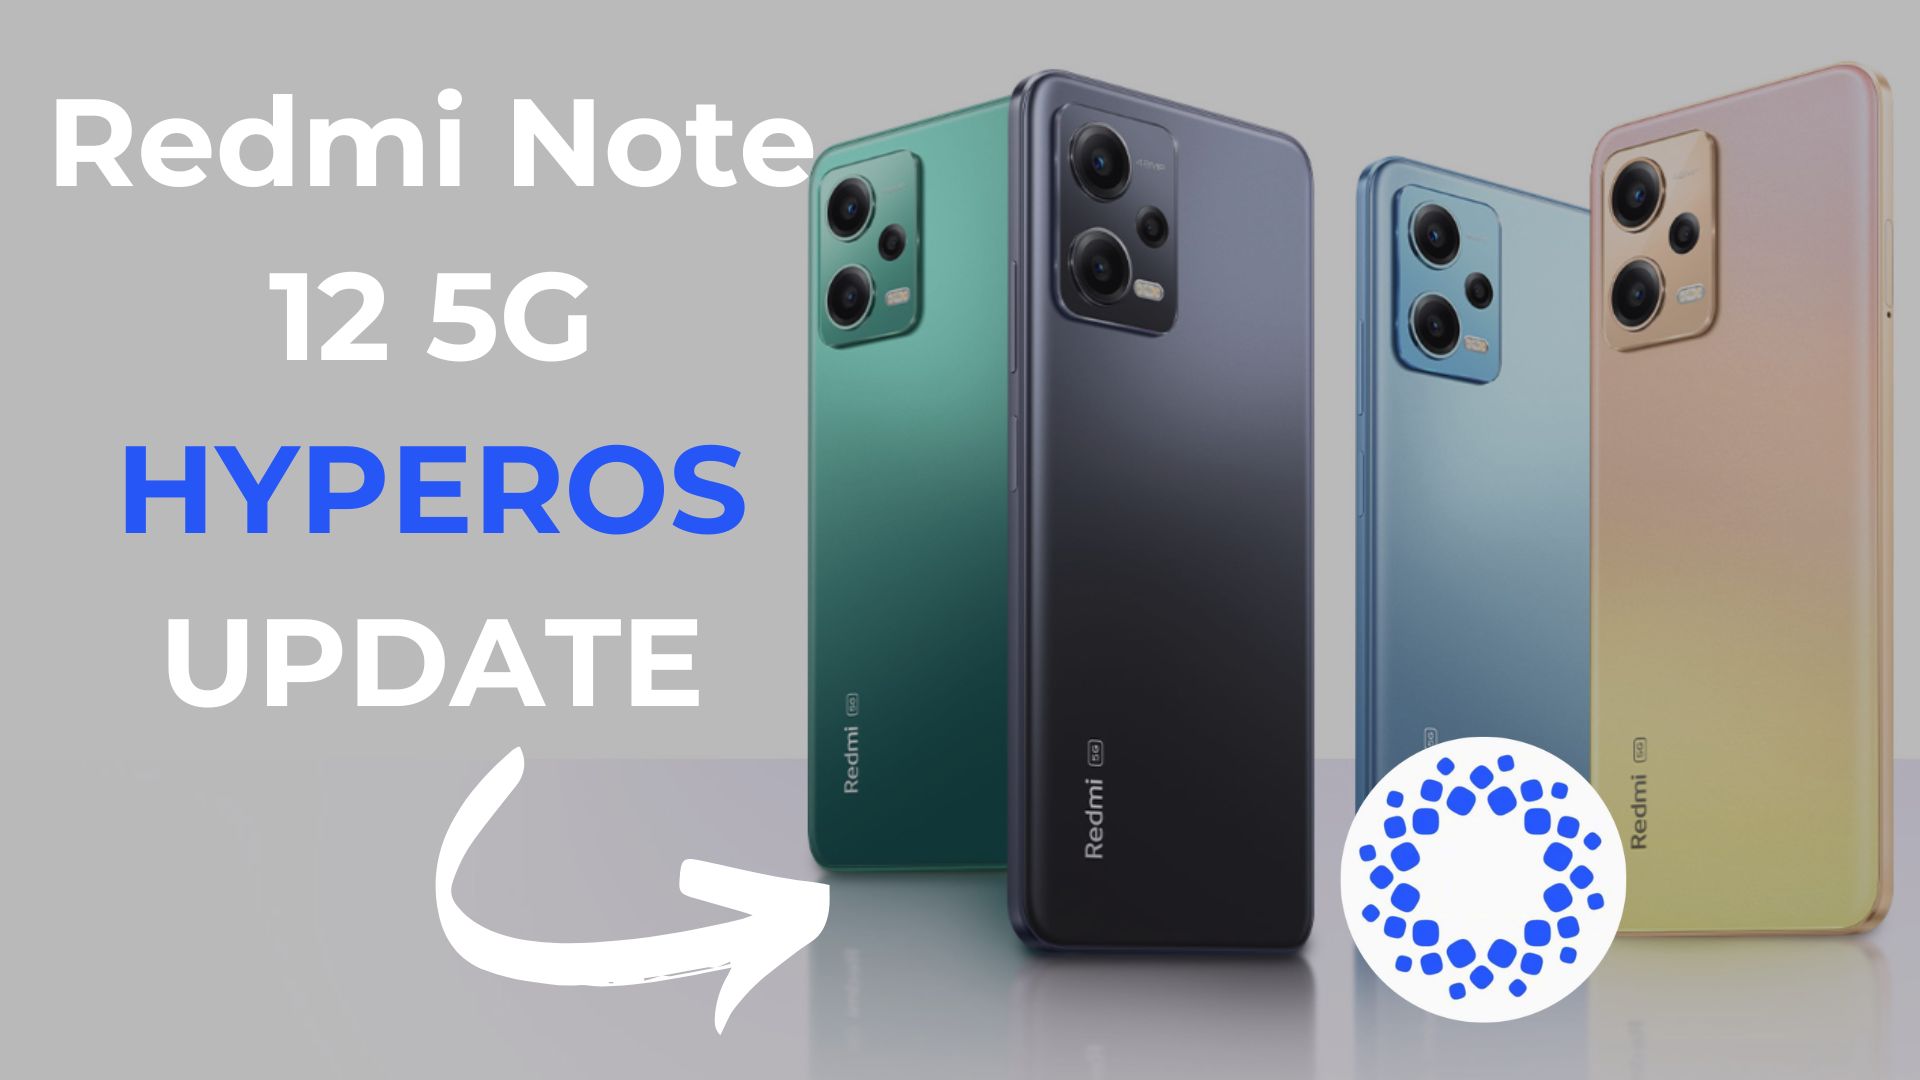 Redmi Note 12 5G HYPEROS UPDATE